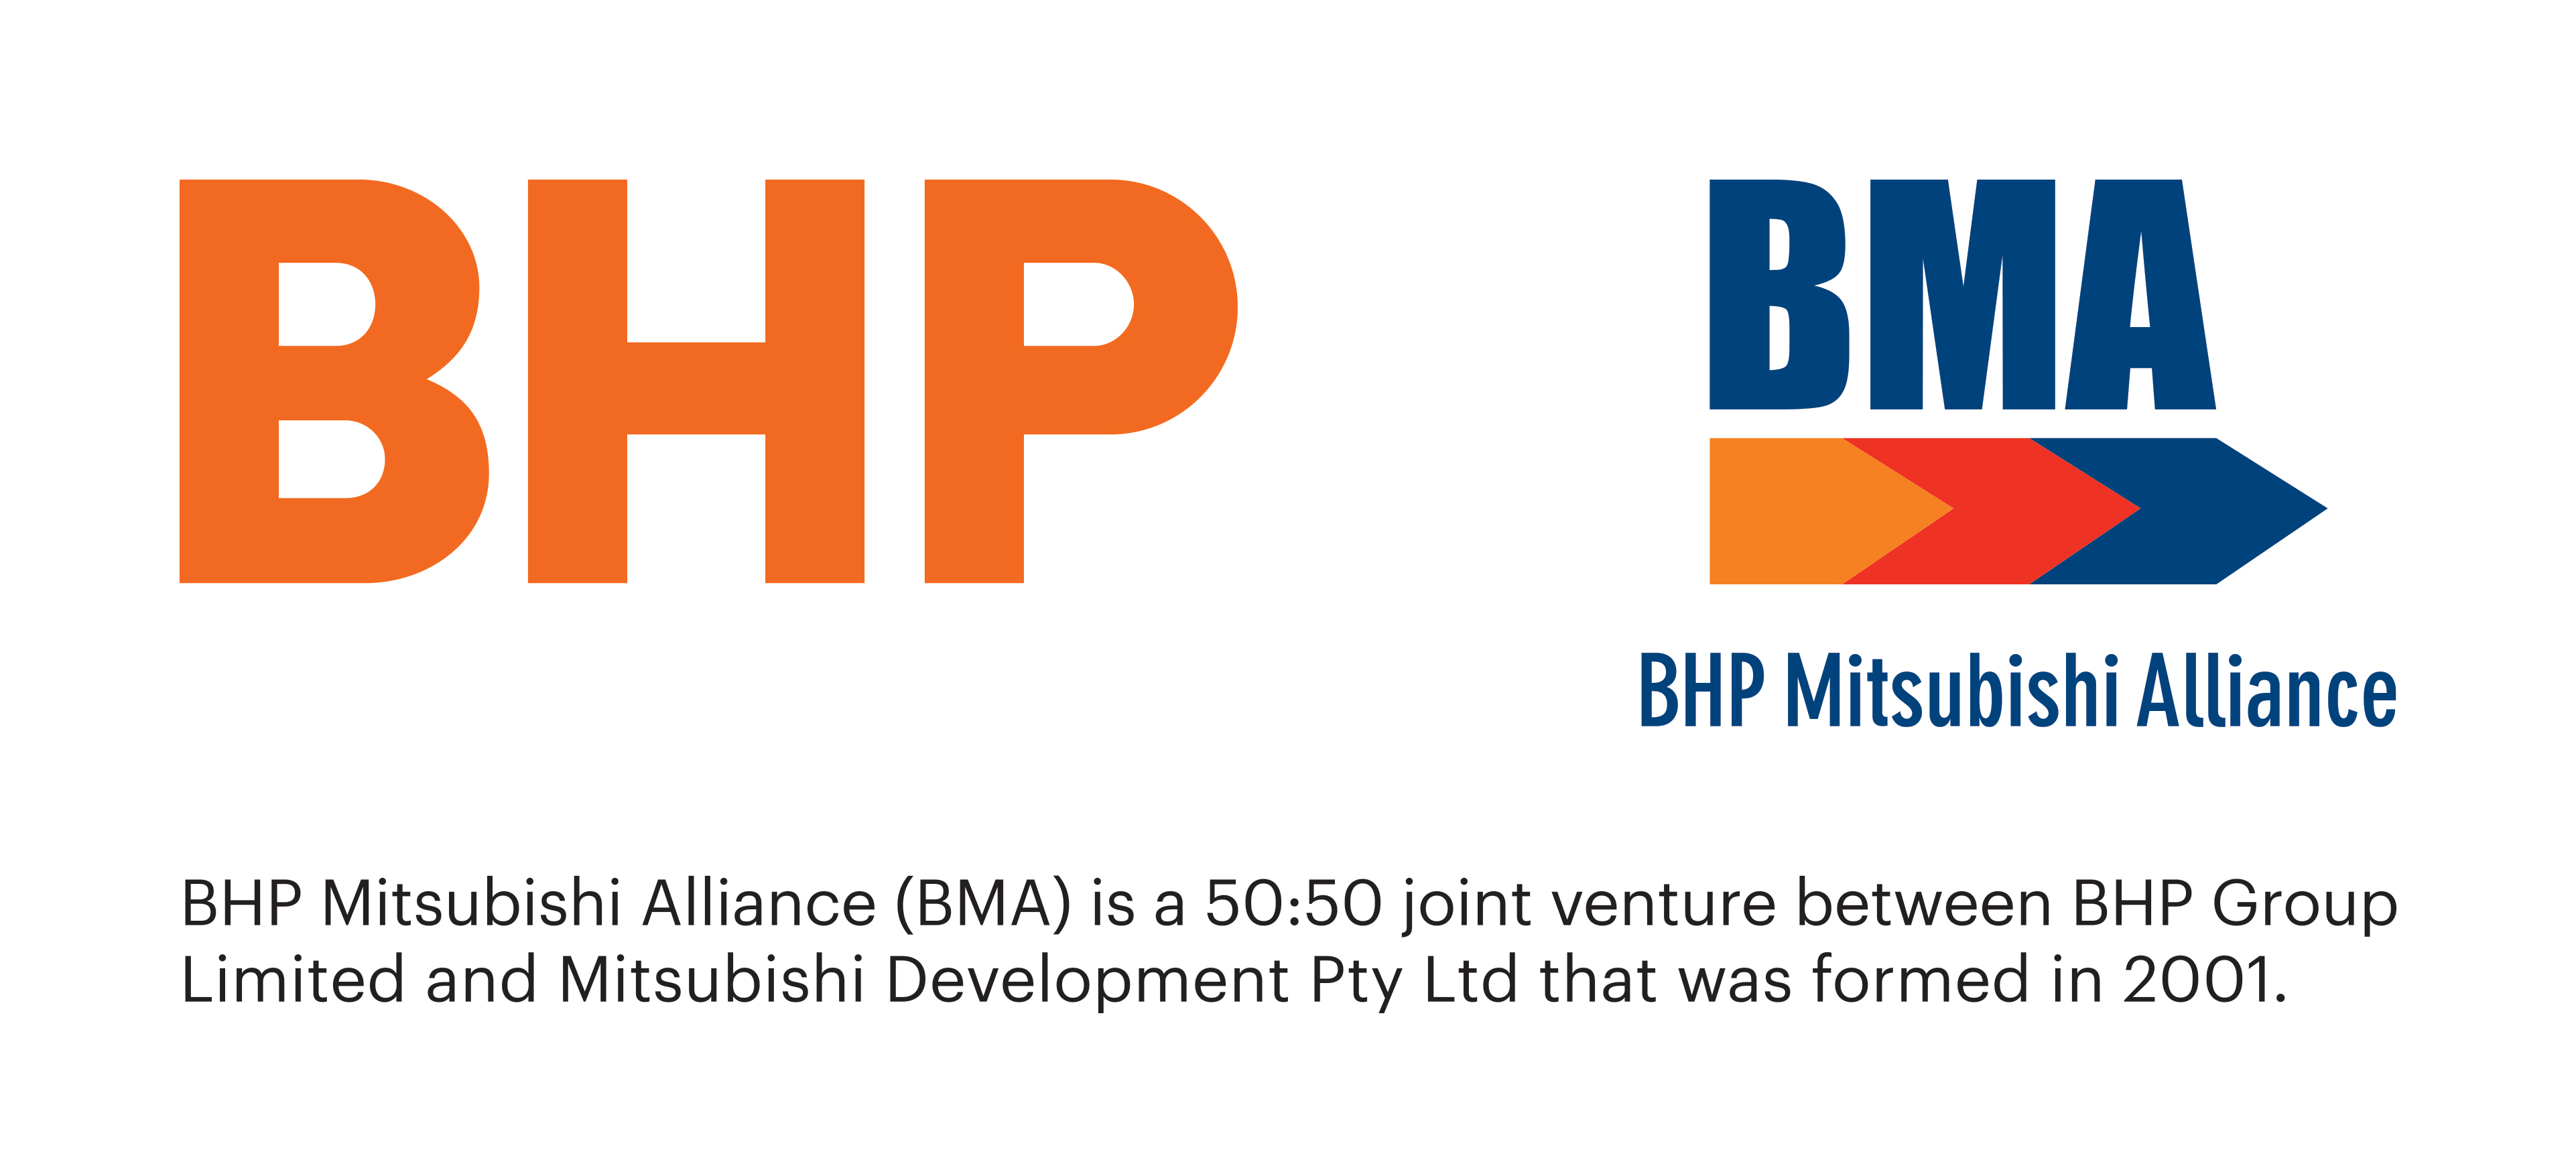 BHP and BMA logo